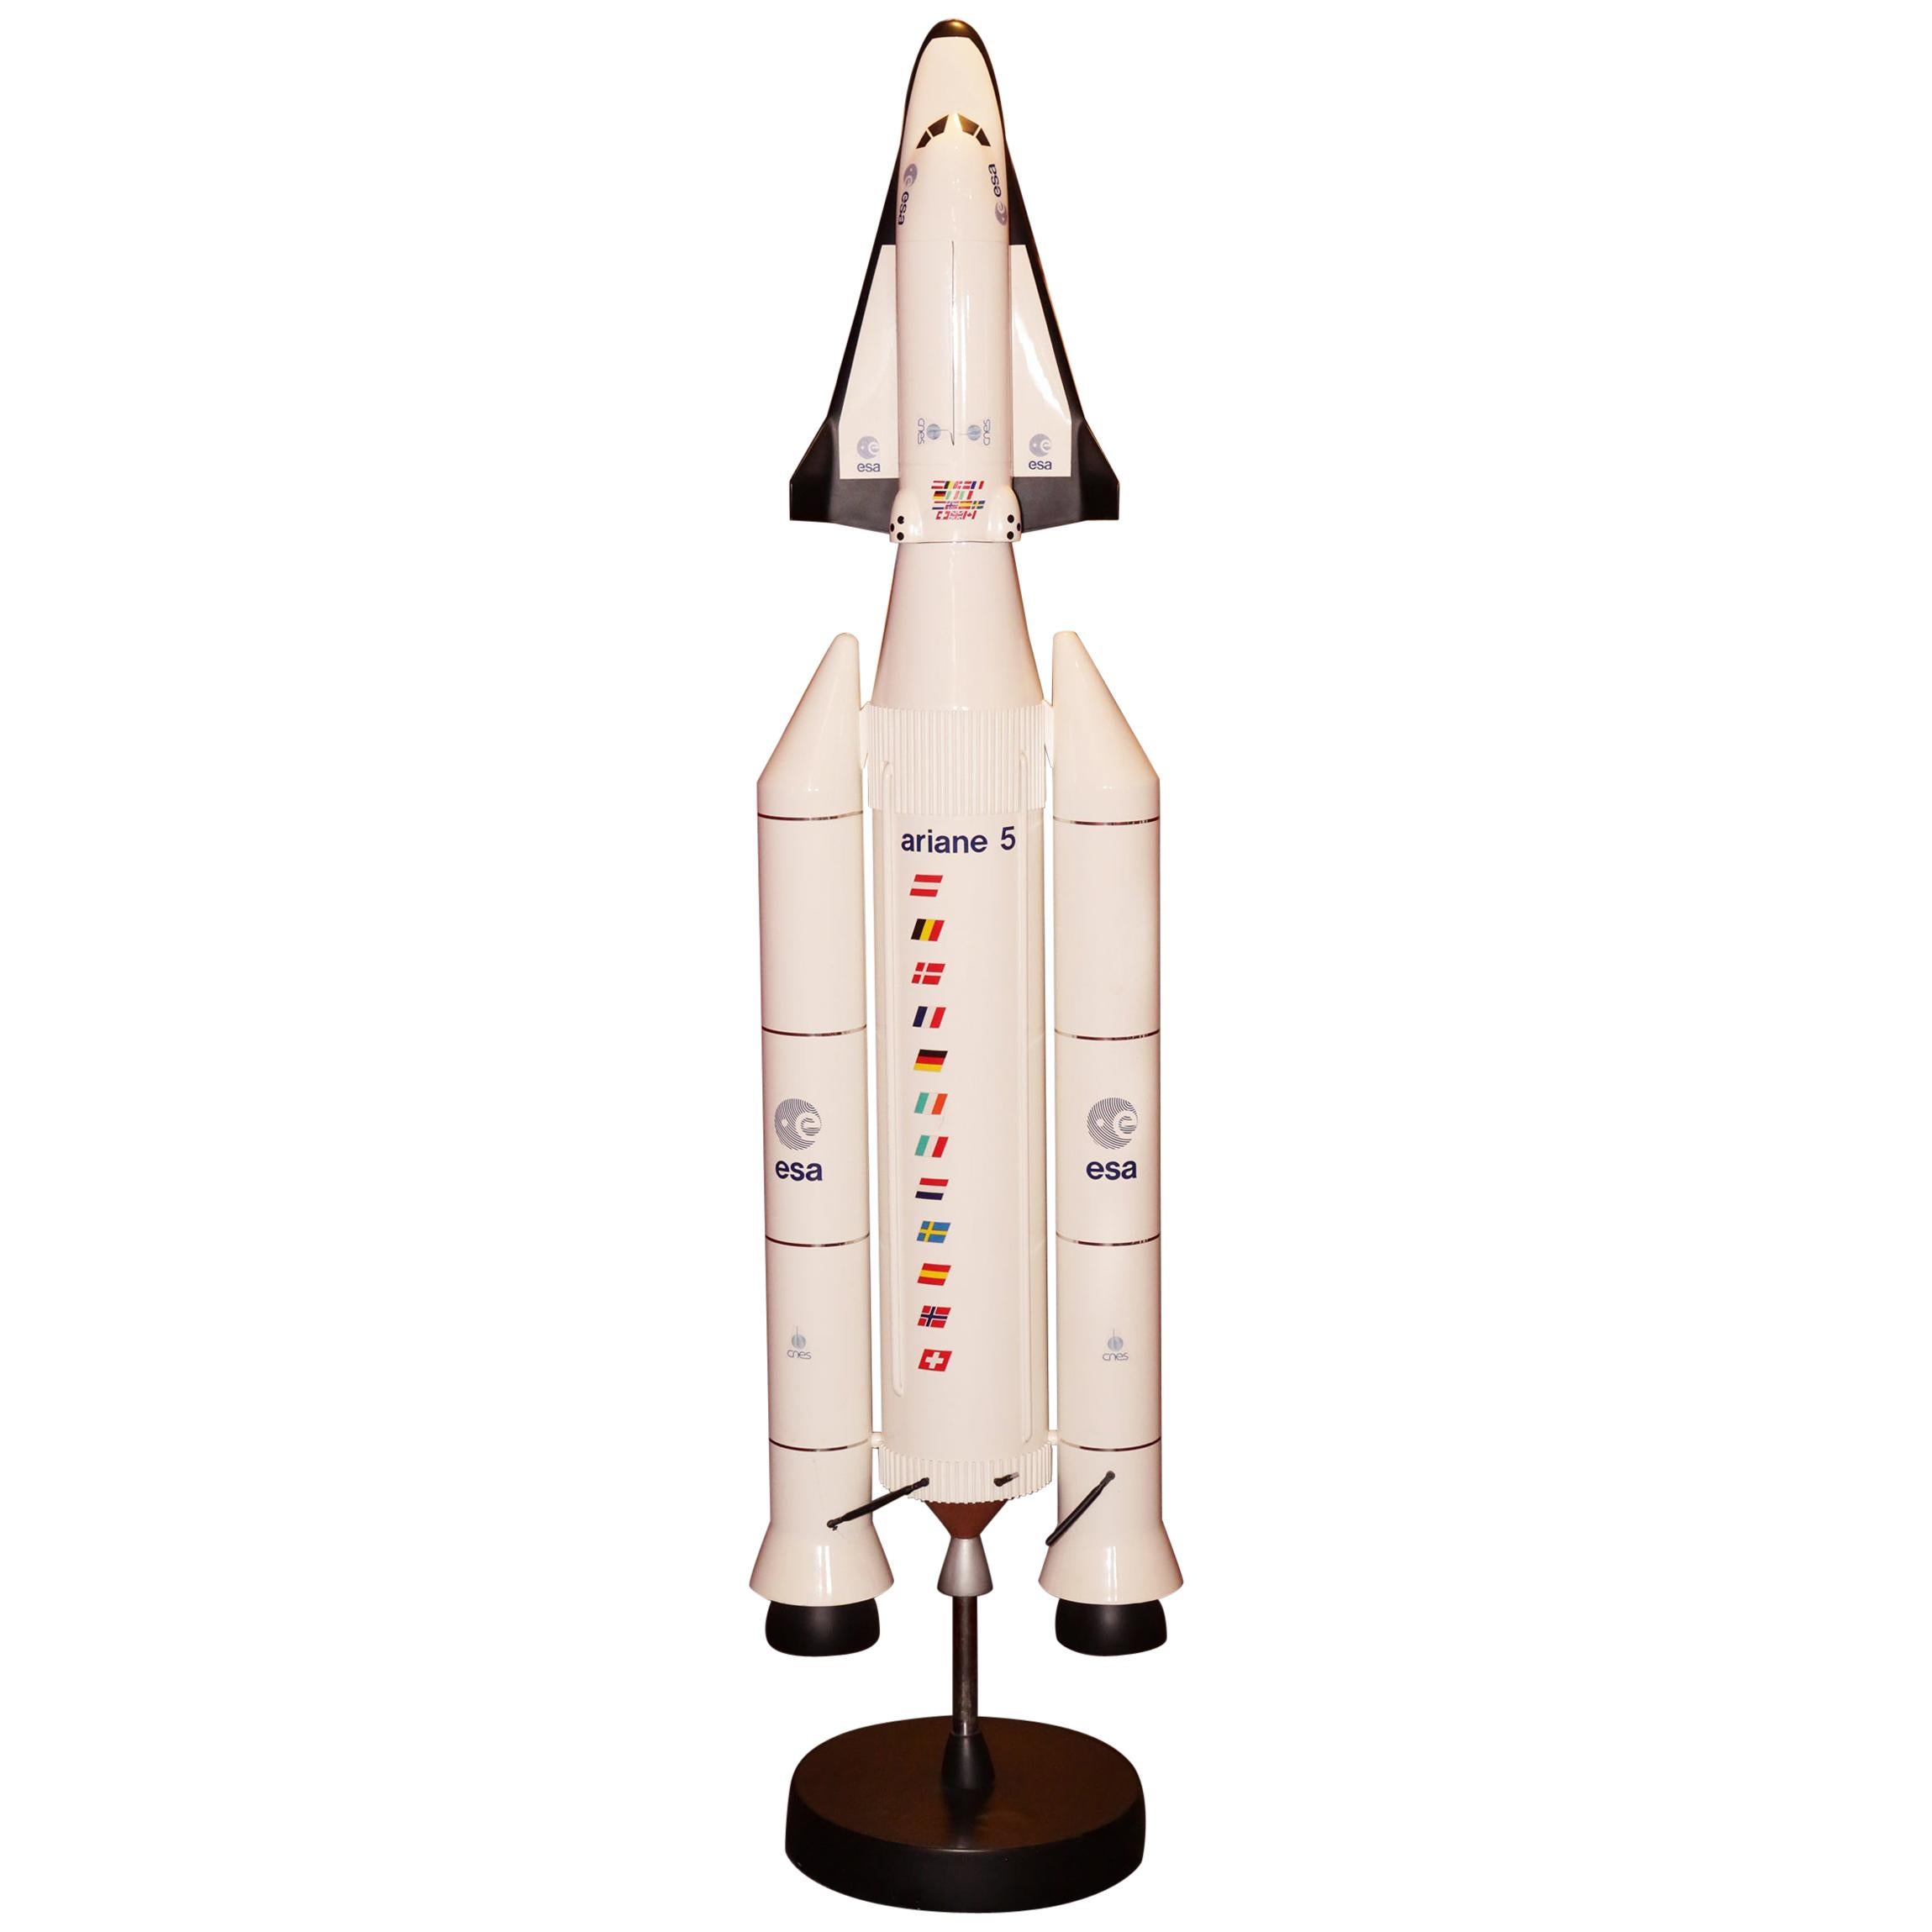 Ariane V & Hermes Rocket Model